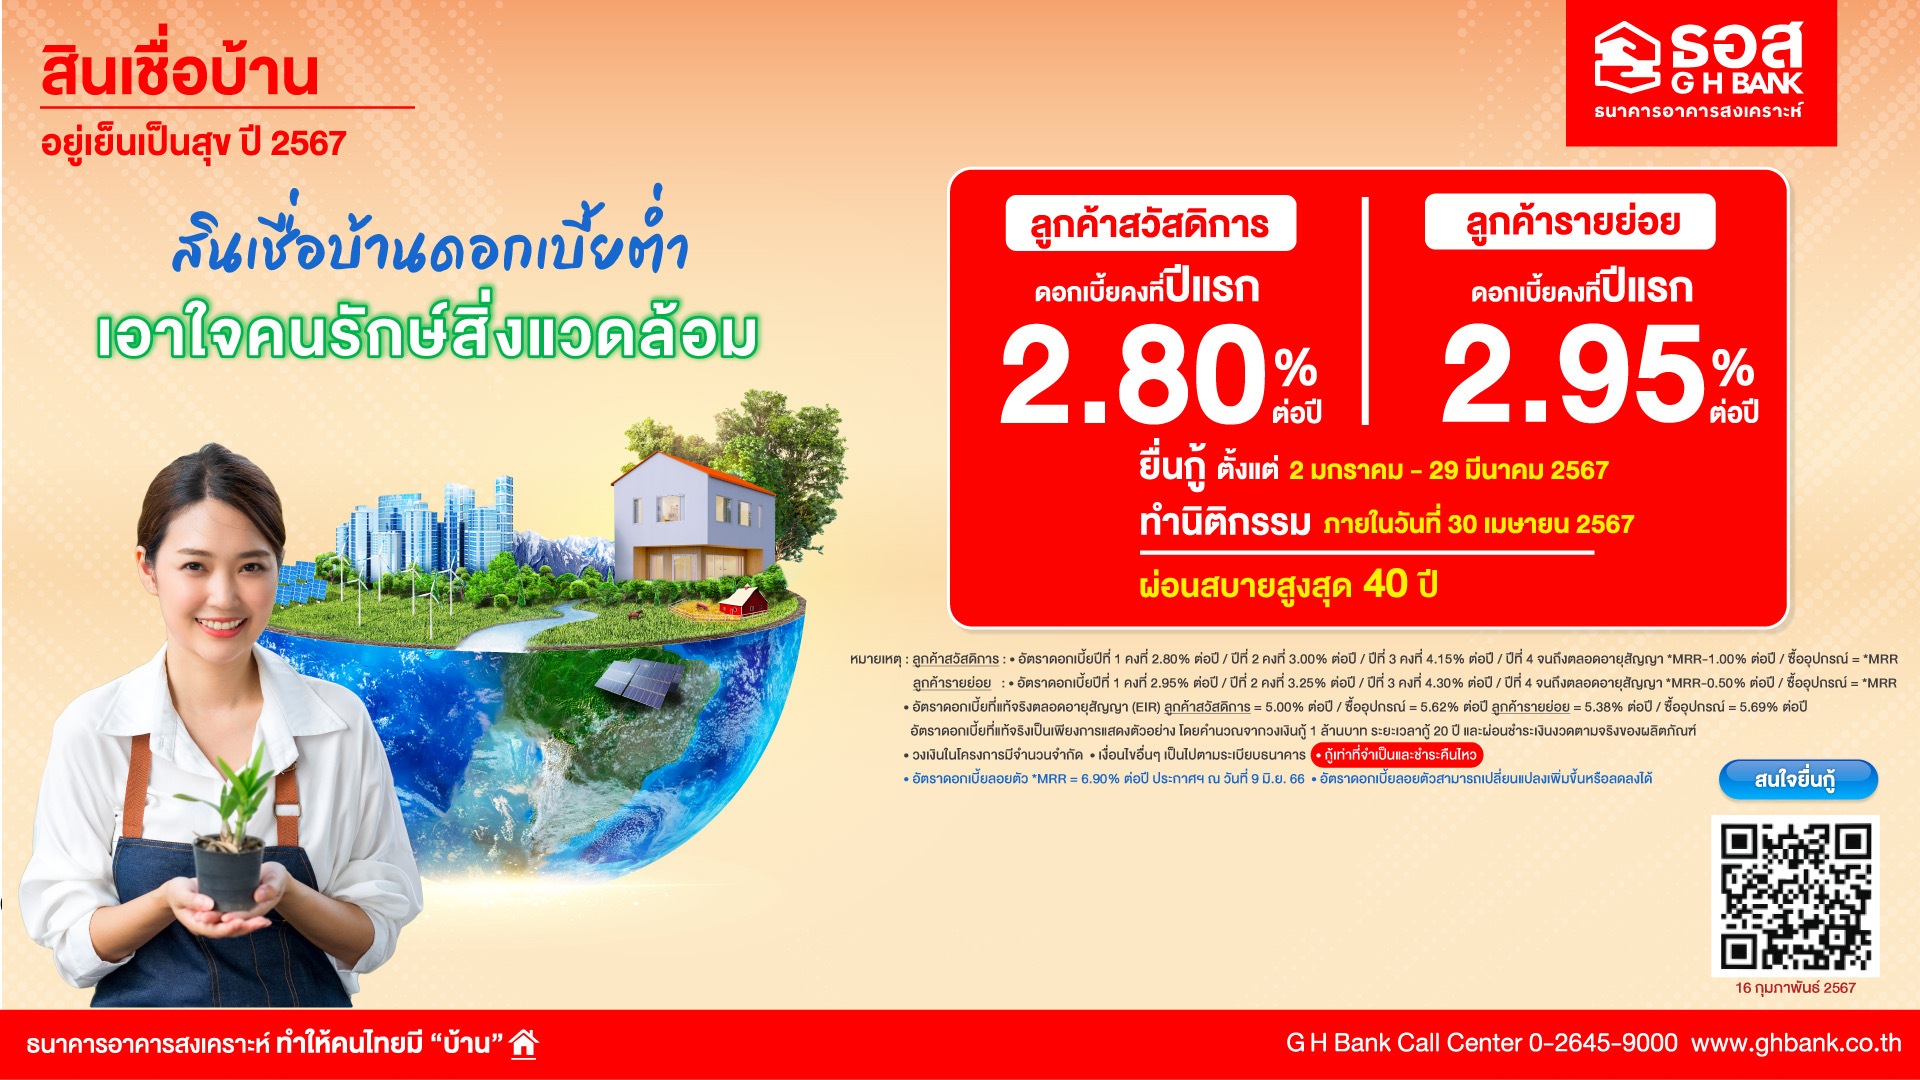 ธอส. สนับสนุนคนไทยมีบ้าน เตรียมกรอบวงเงิน 37,500 ล้านบาท ดอกเบี้ยคงที่ เริ่มต้น 2.80% ต่อปี